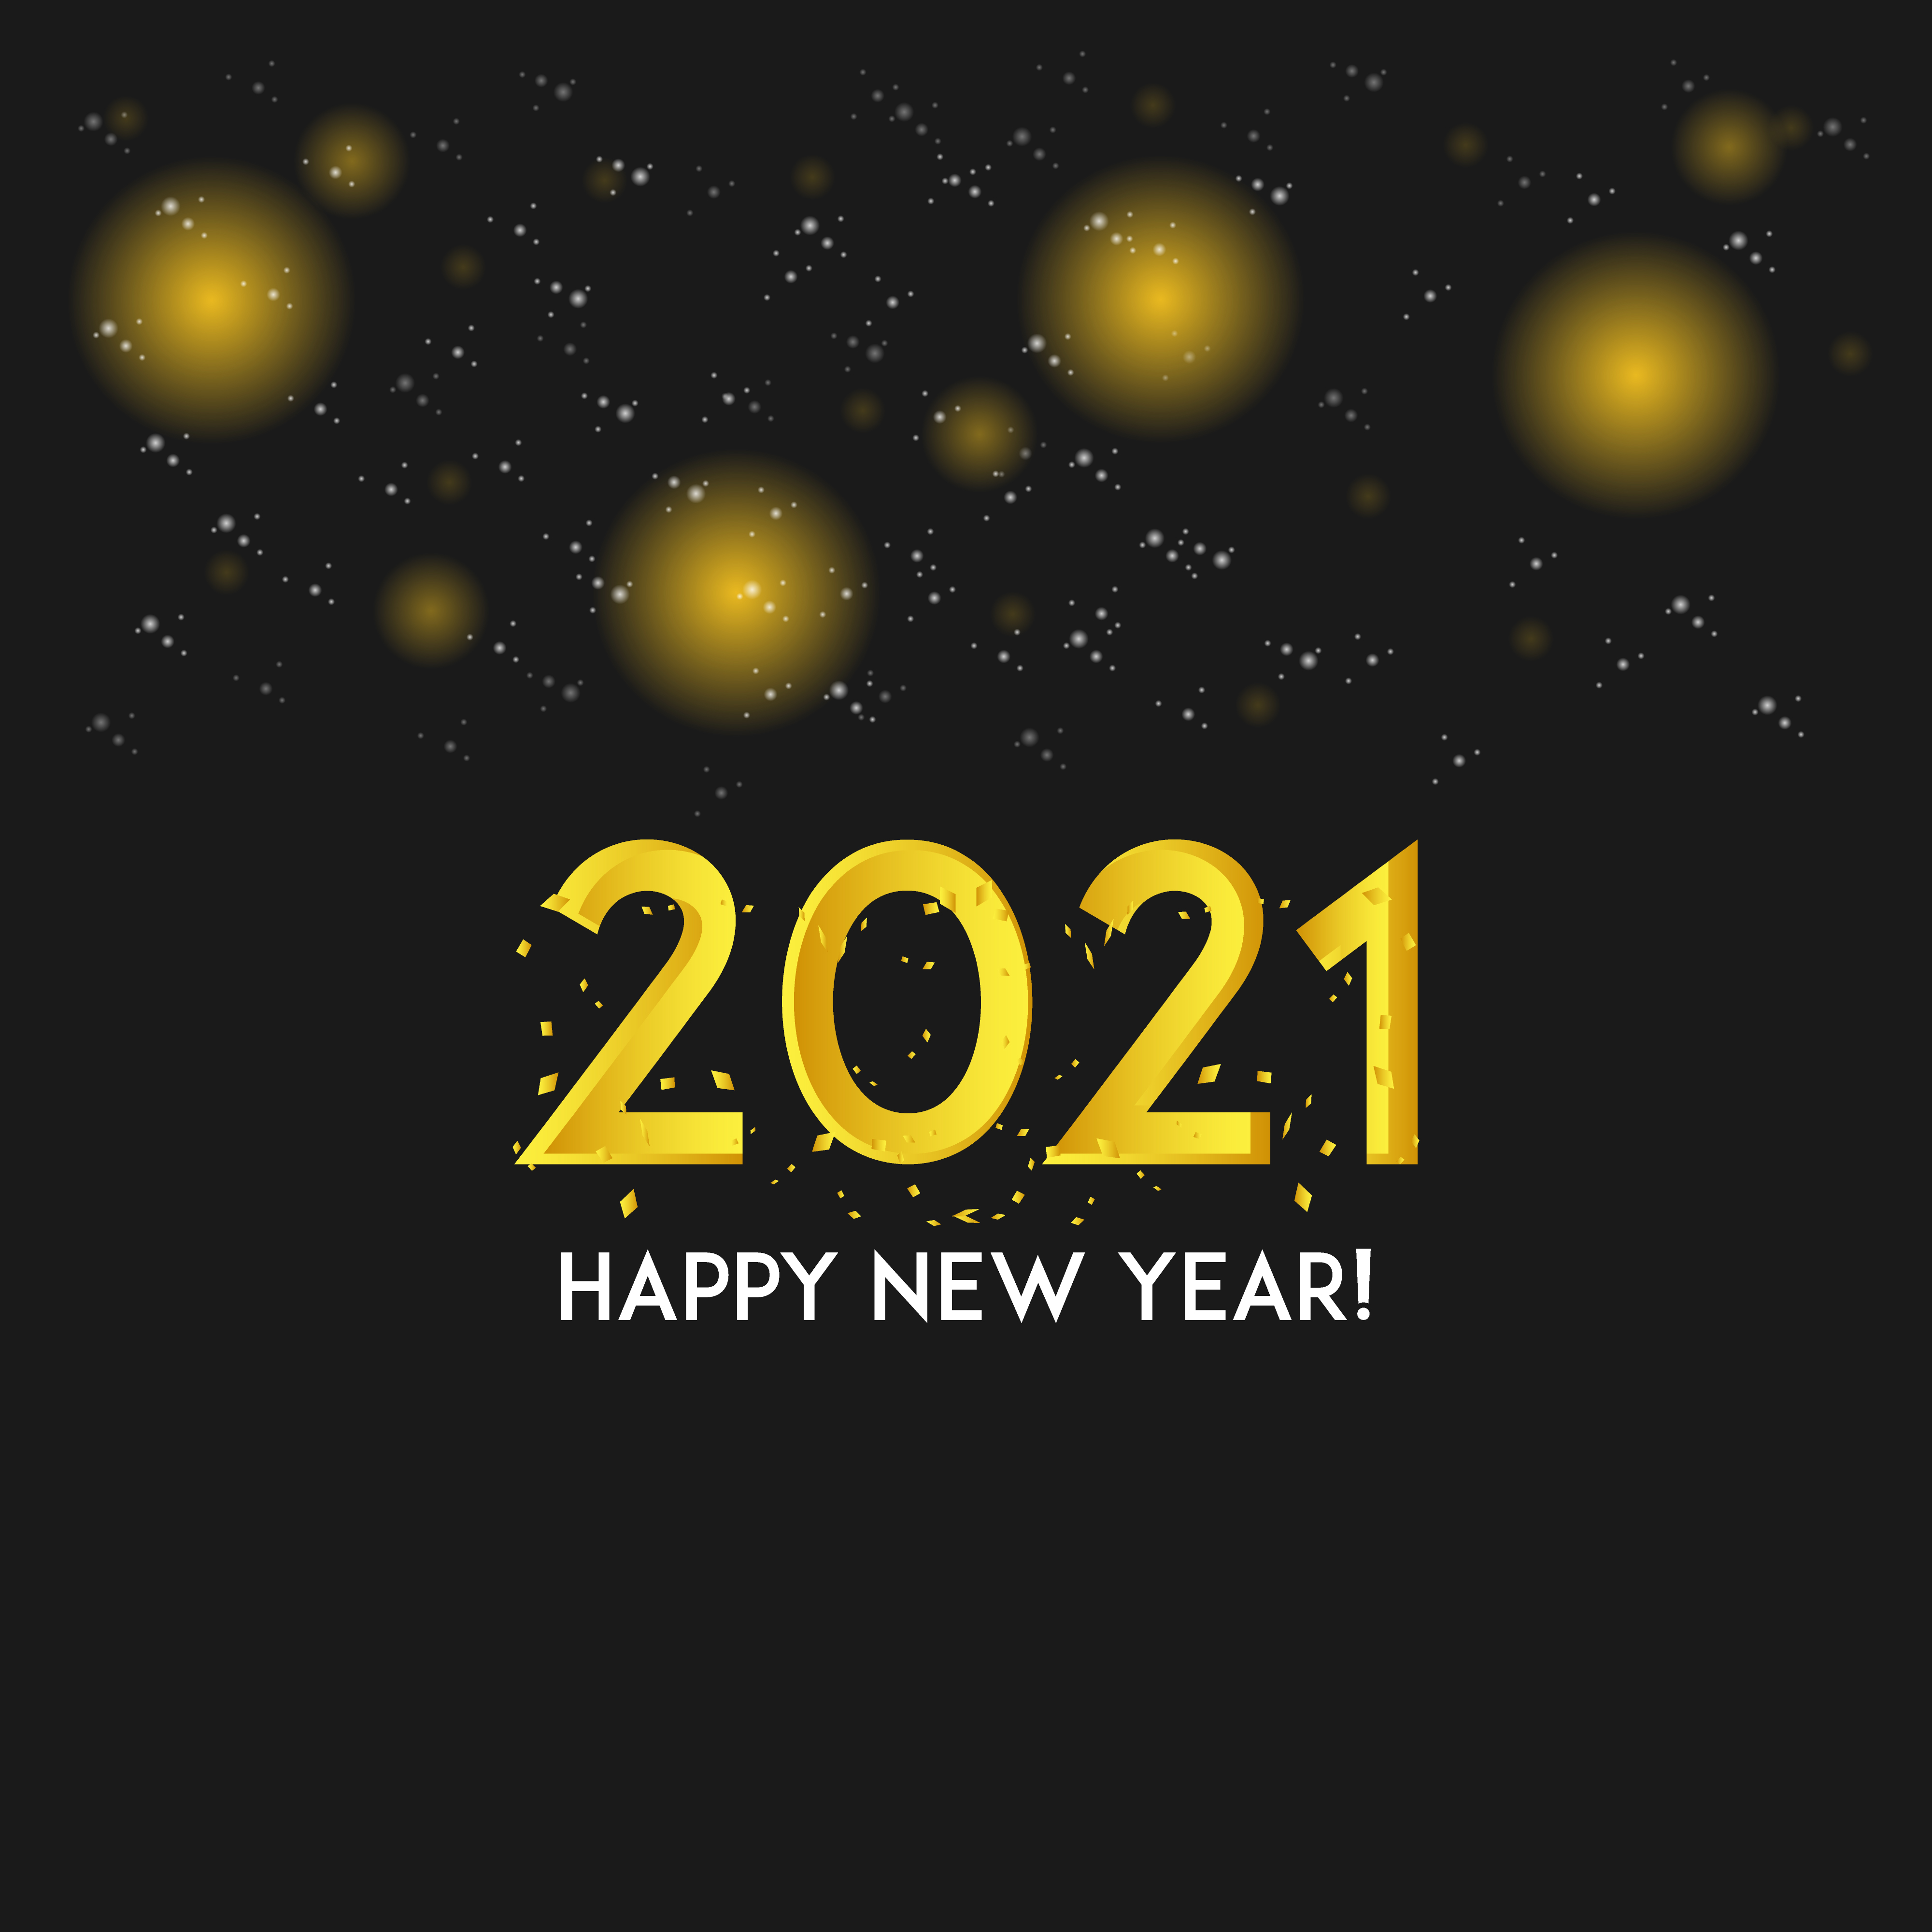 2021新年快樂圖 免費下載 | 天天瘋後製